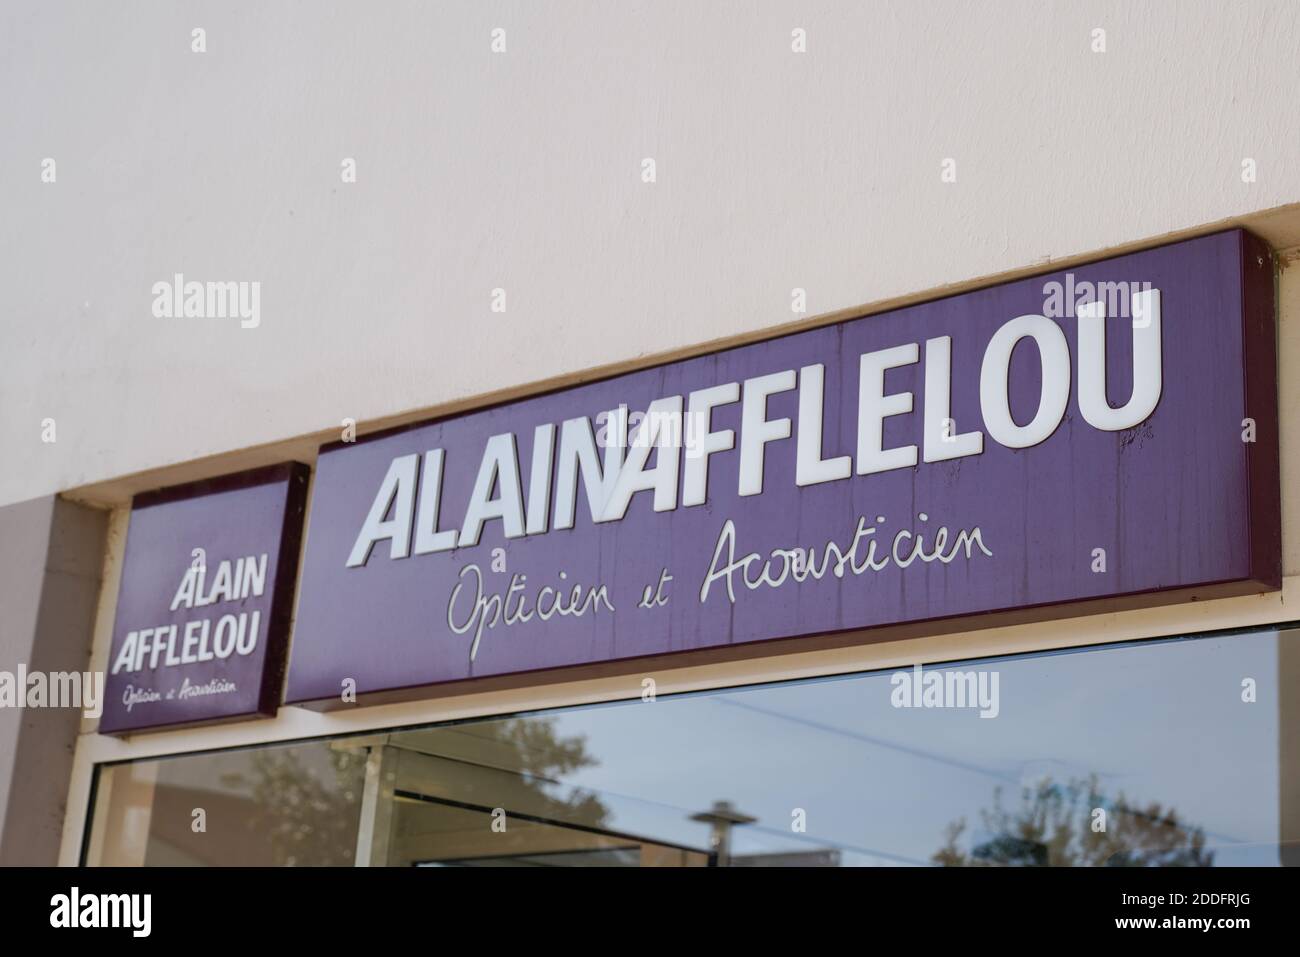 Burdeos , Aquitania / Francia - 11 08 2020 : alain afflelou logotipo y  signo de texto de la tienda francesa de la calle Marca óptico de la tienda  de gafas médicas Fotografía de stock - Alamy